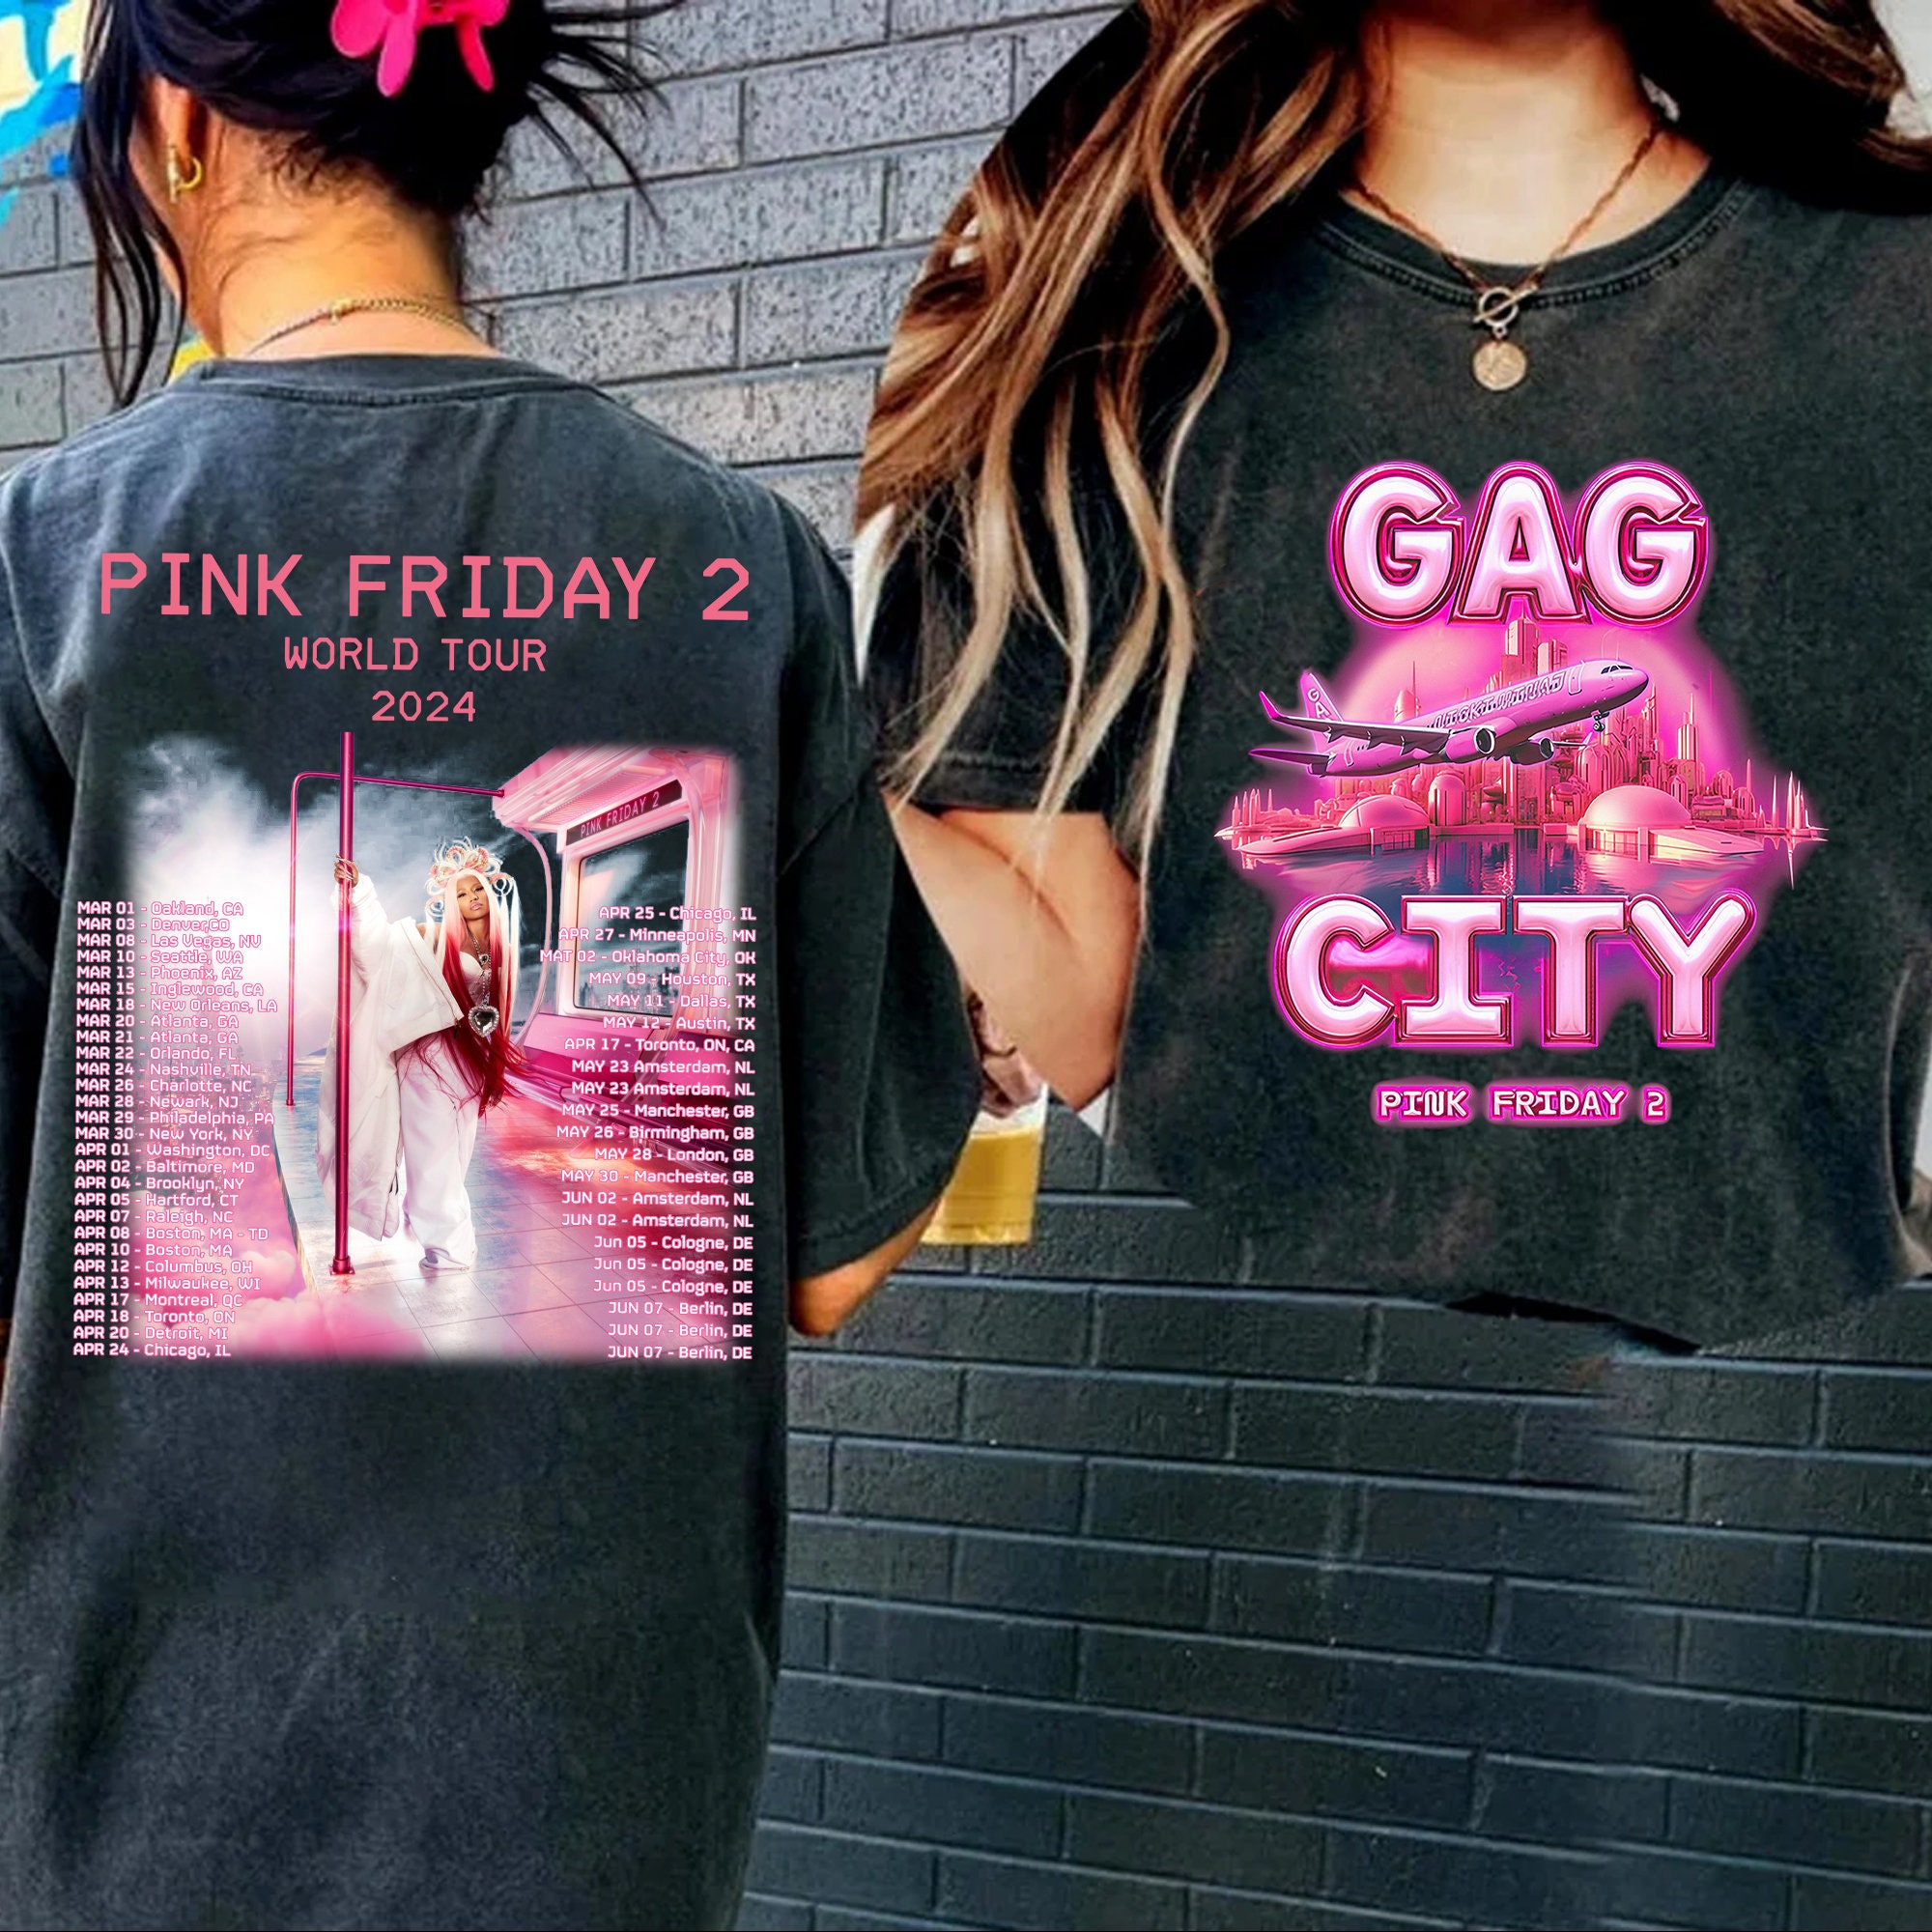 Nicki Minaj 2 Sides Vintage Shirt, Retro Pink Friday Airbrush Tee